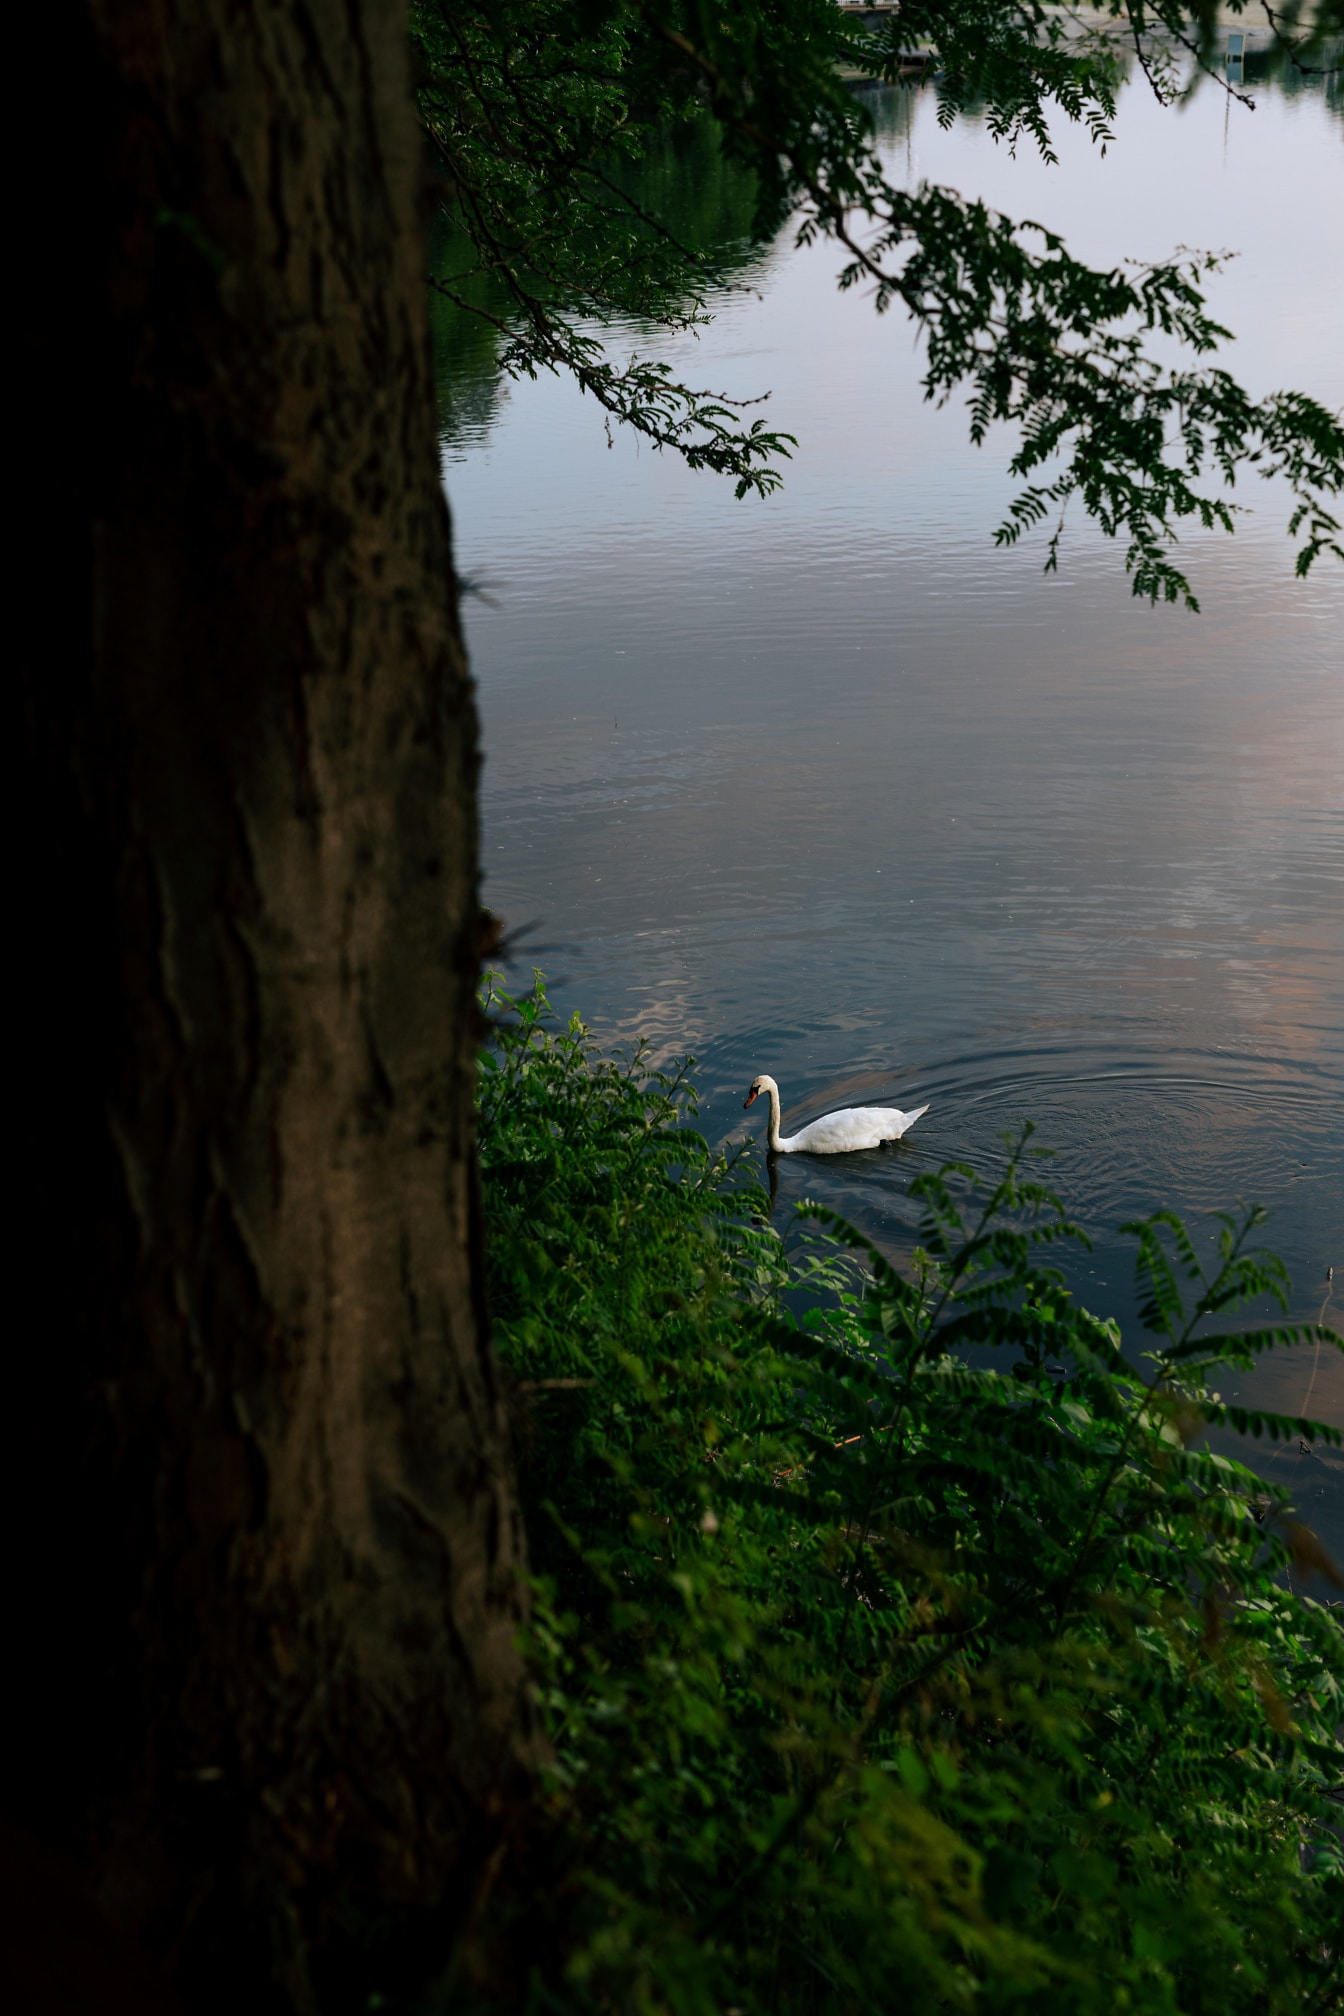 Giovane cigno muto da solo sulla riva del fiume in primavera